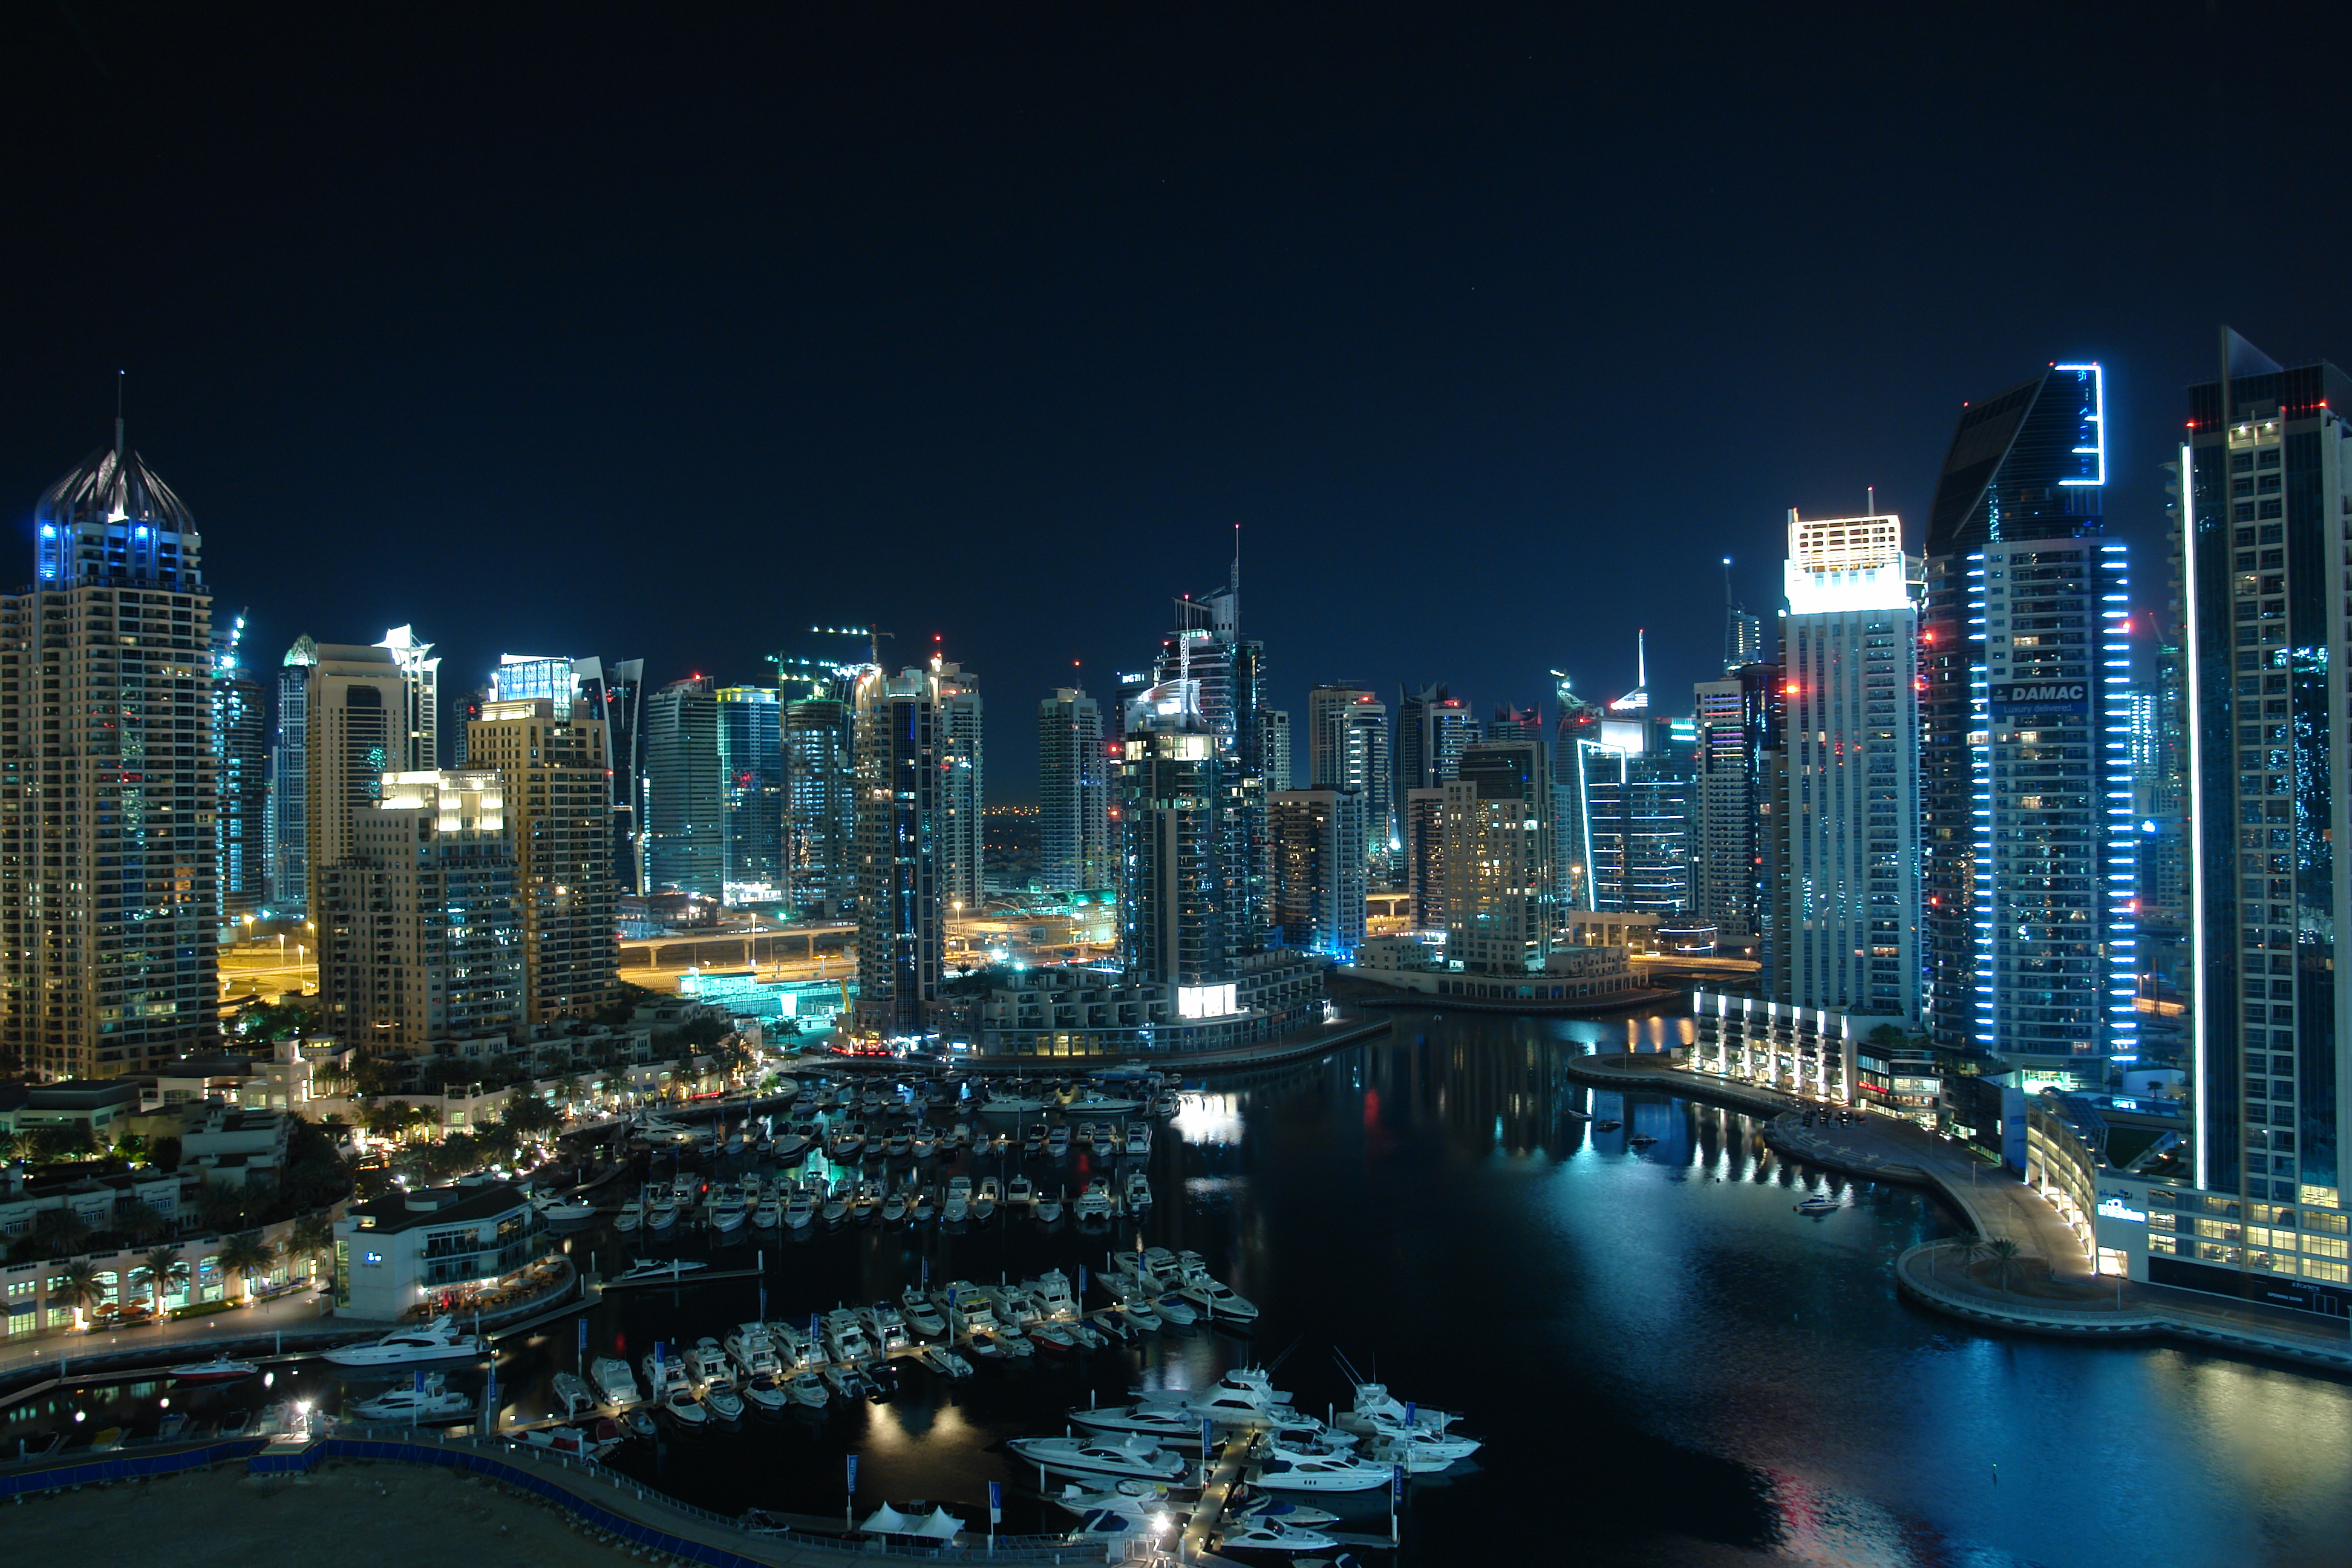 Dubai Marina At Night By Horstr On Deviantart